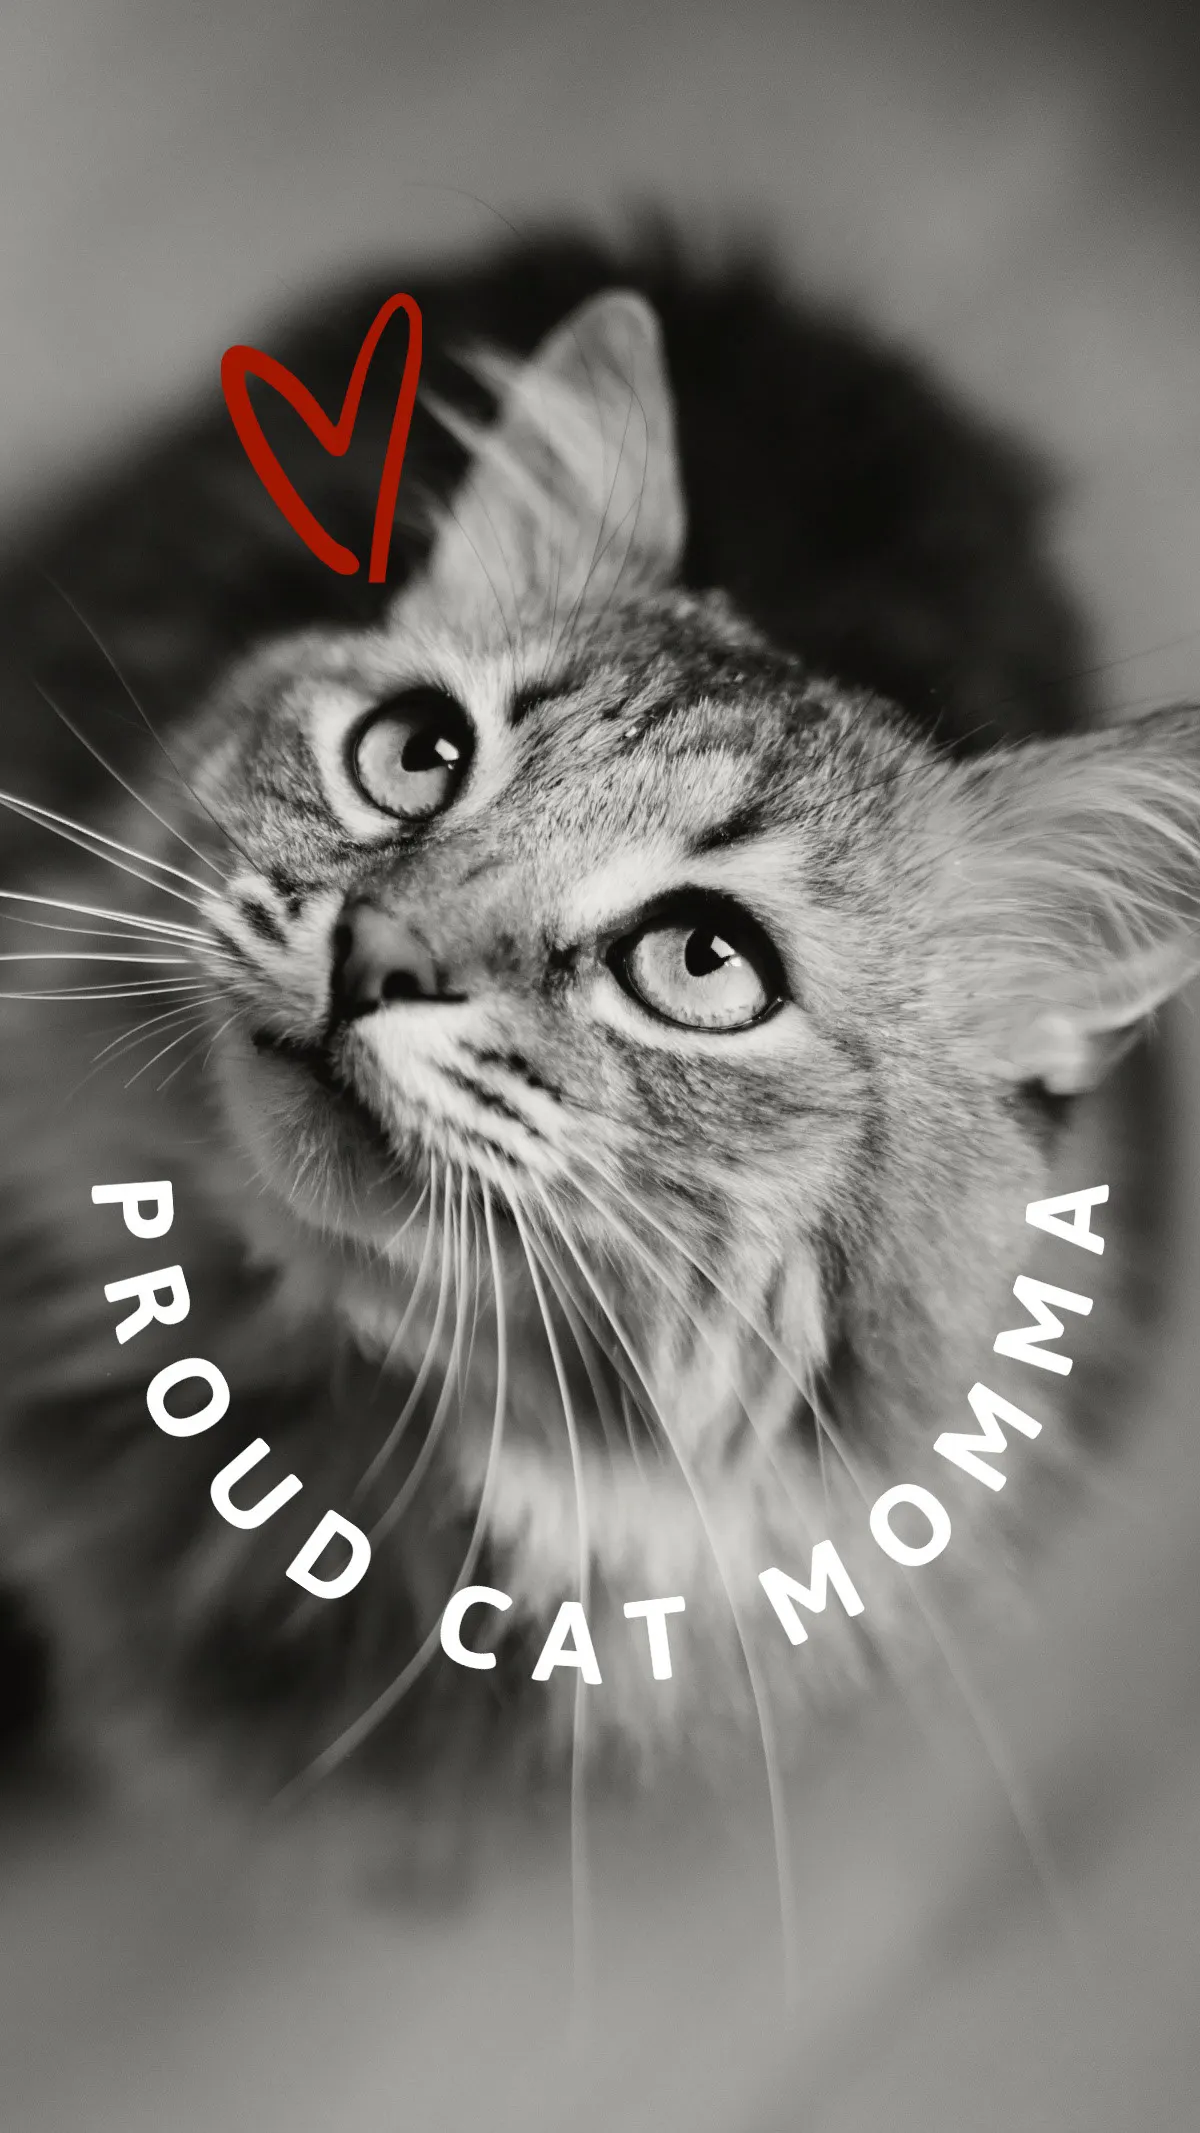 Black, White & Red Proud Cat Momma Mobile Wallpaper